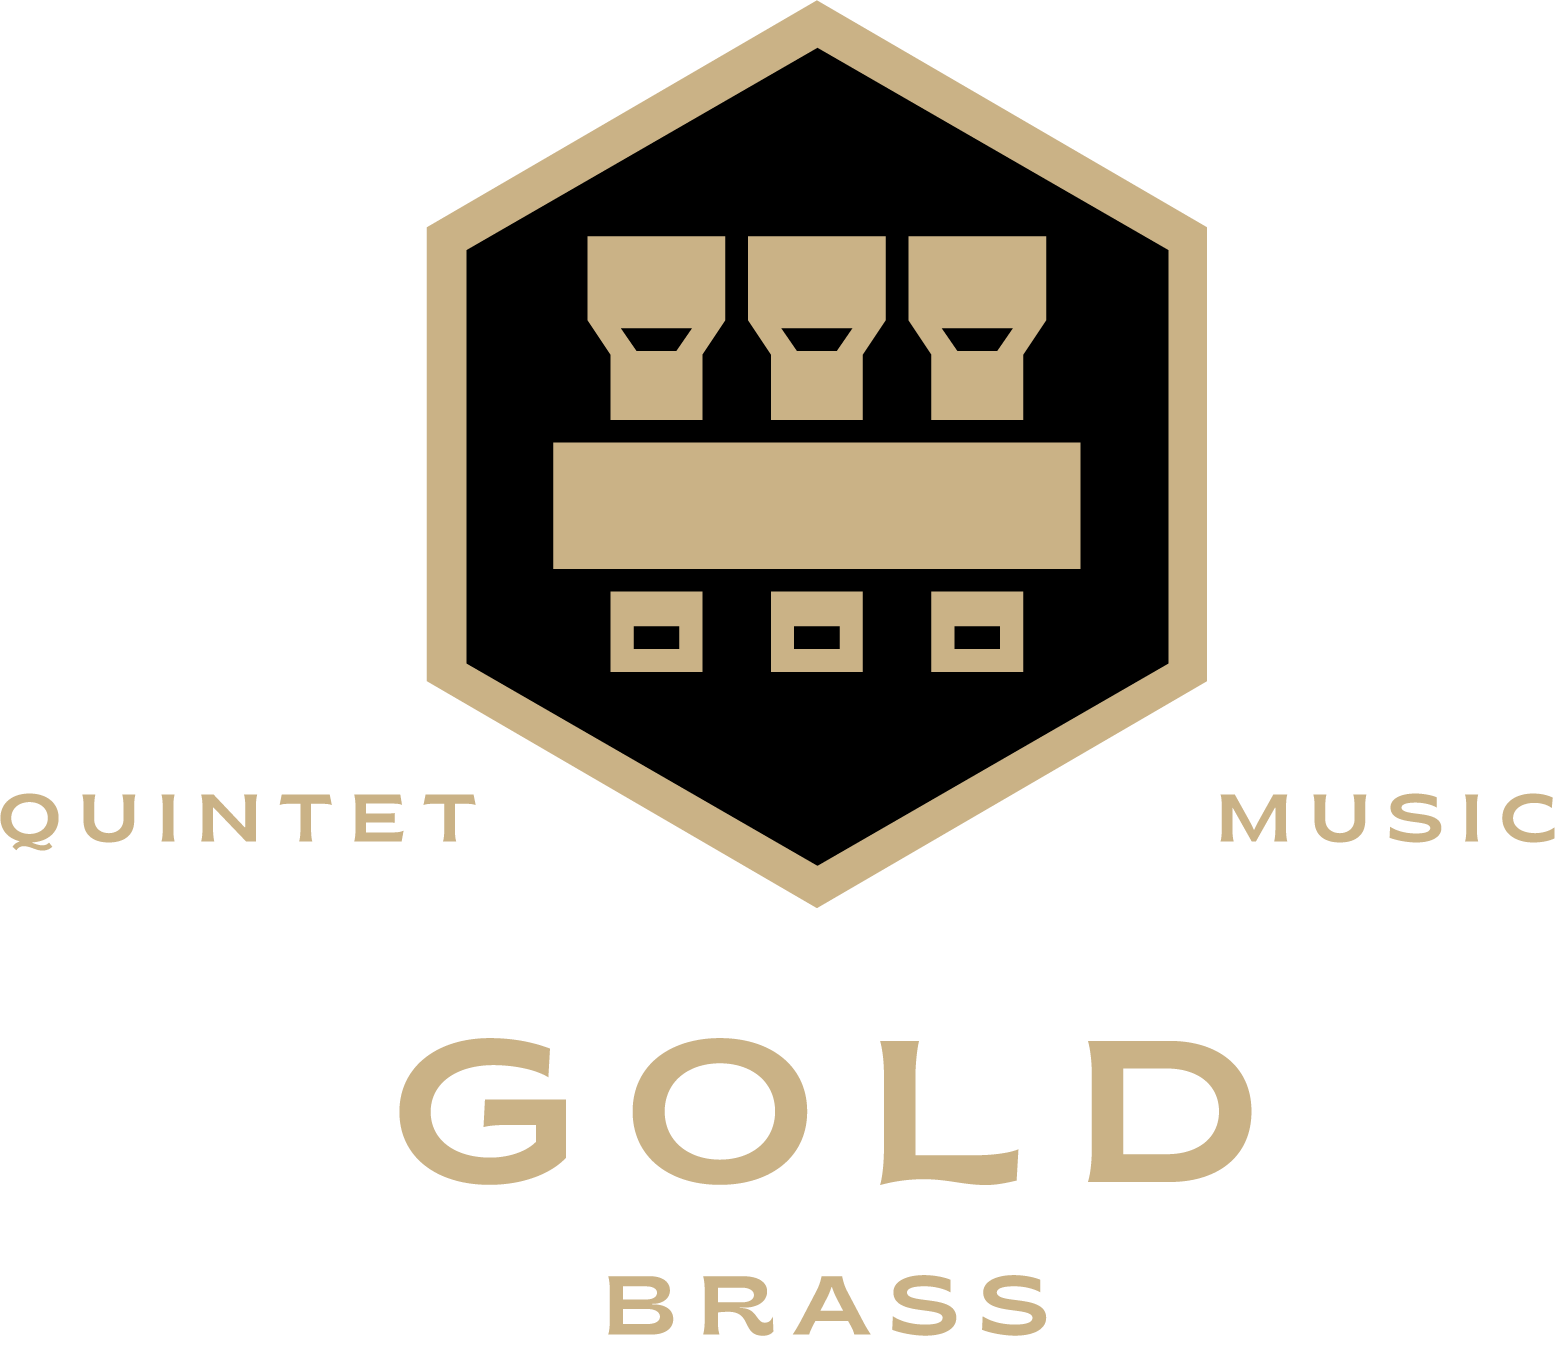 Gold Brass Quintet Logo